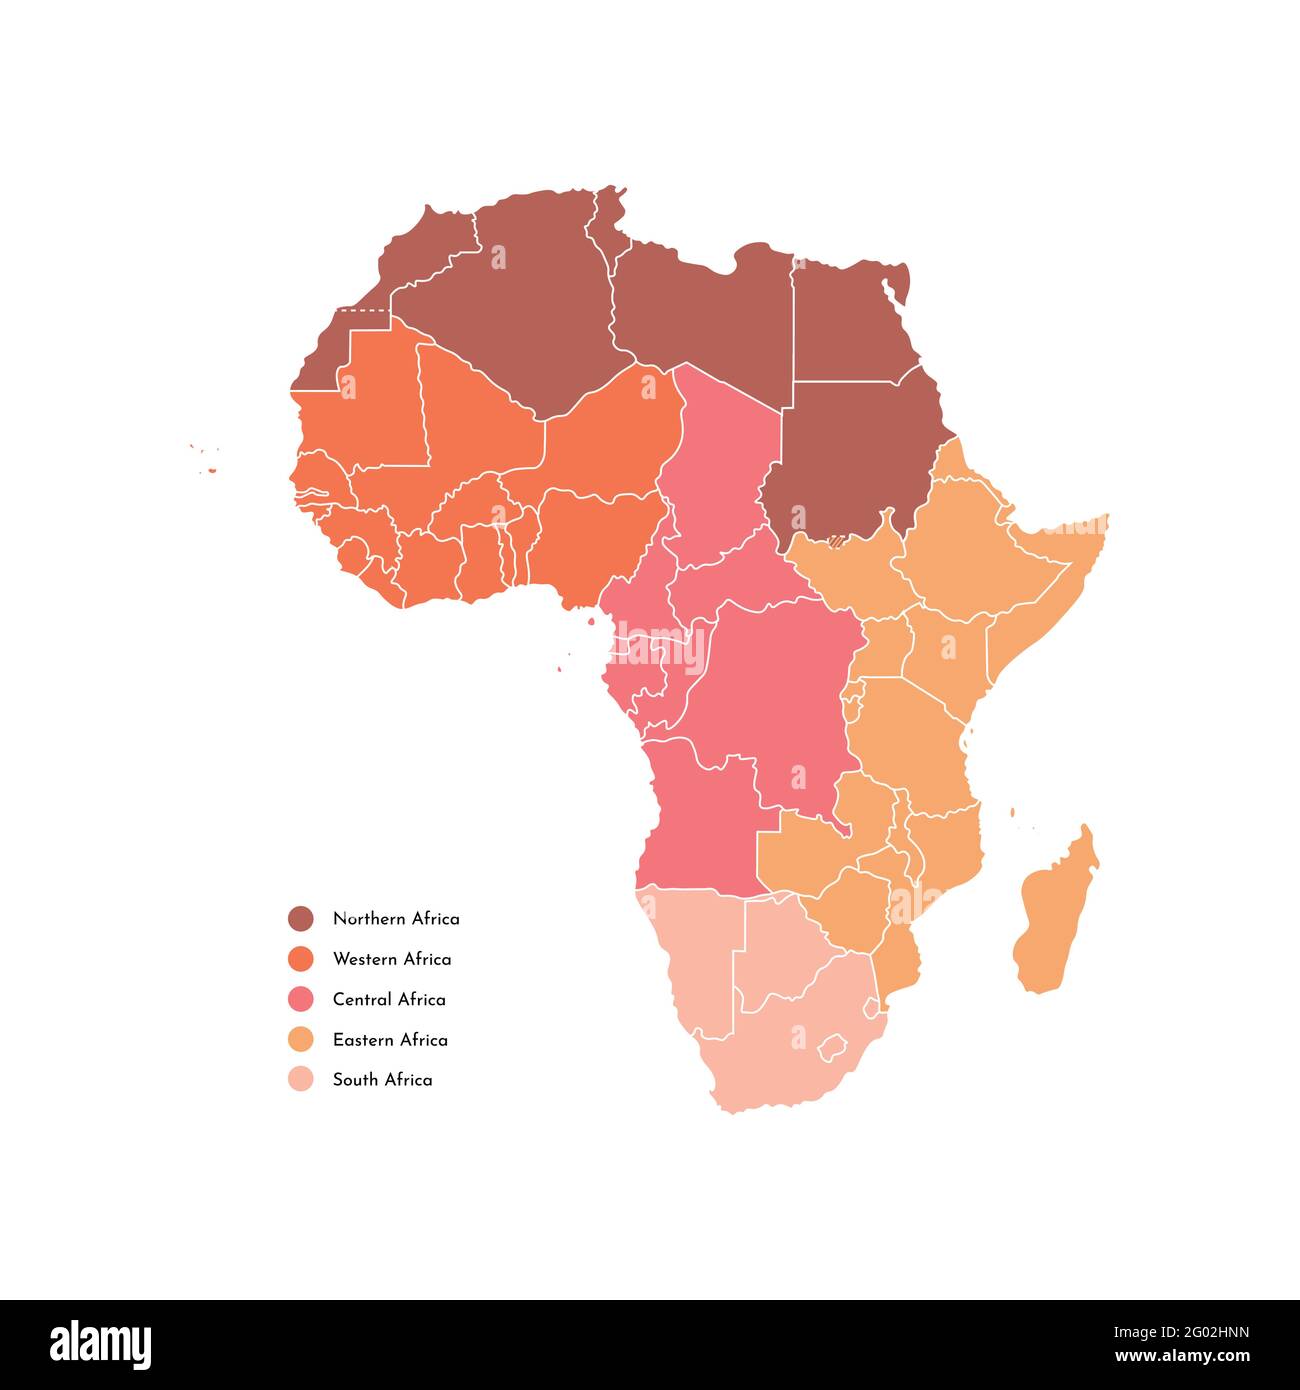 Vettore isolato illustrazione con continente africano con contorni bianchi di tutti gli stati. Mappa semplificata delle regioni africane. Sfondo bianco. Bro Illustrazione Vettoriale